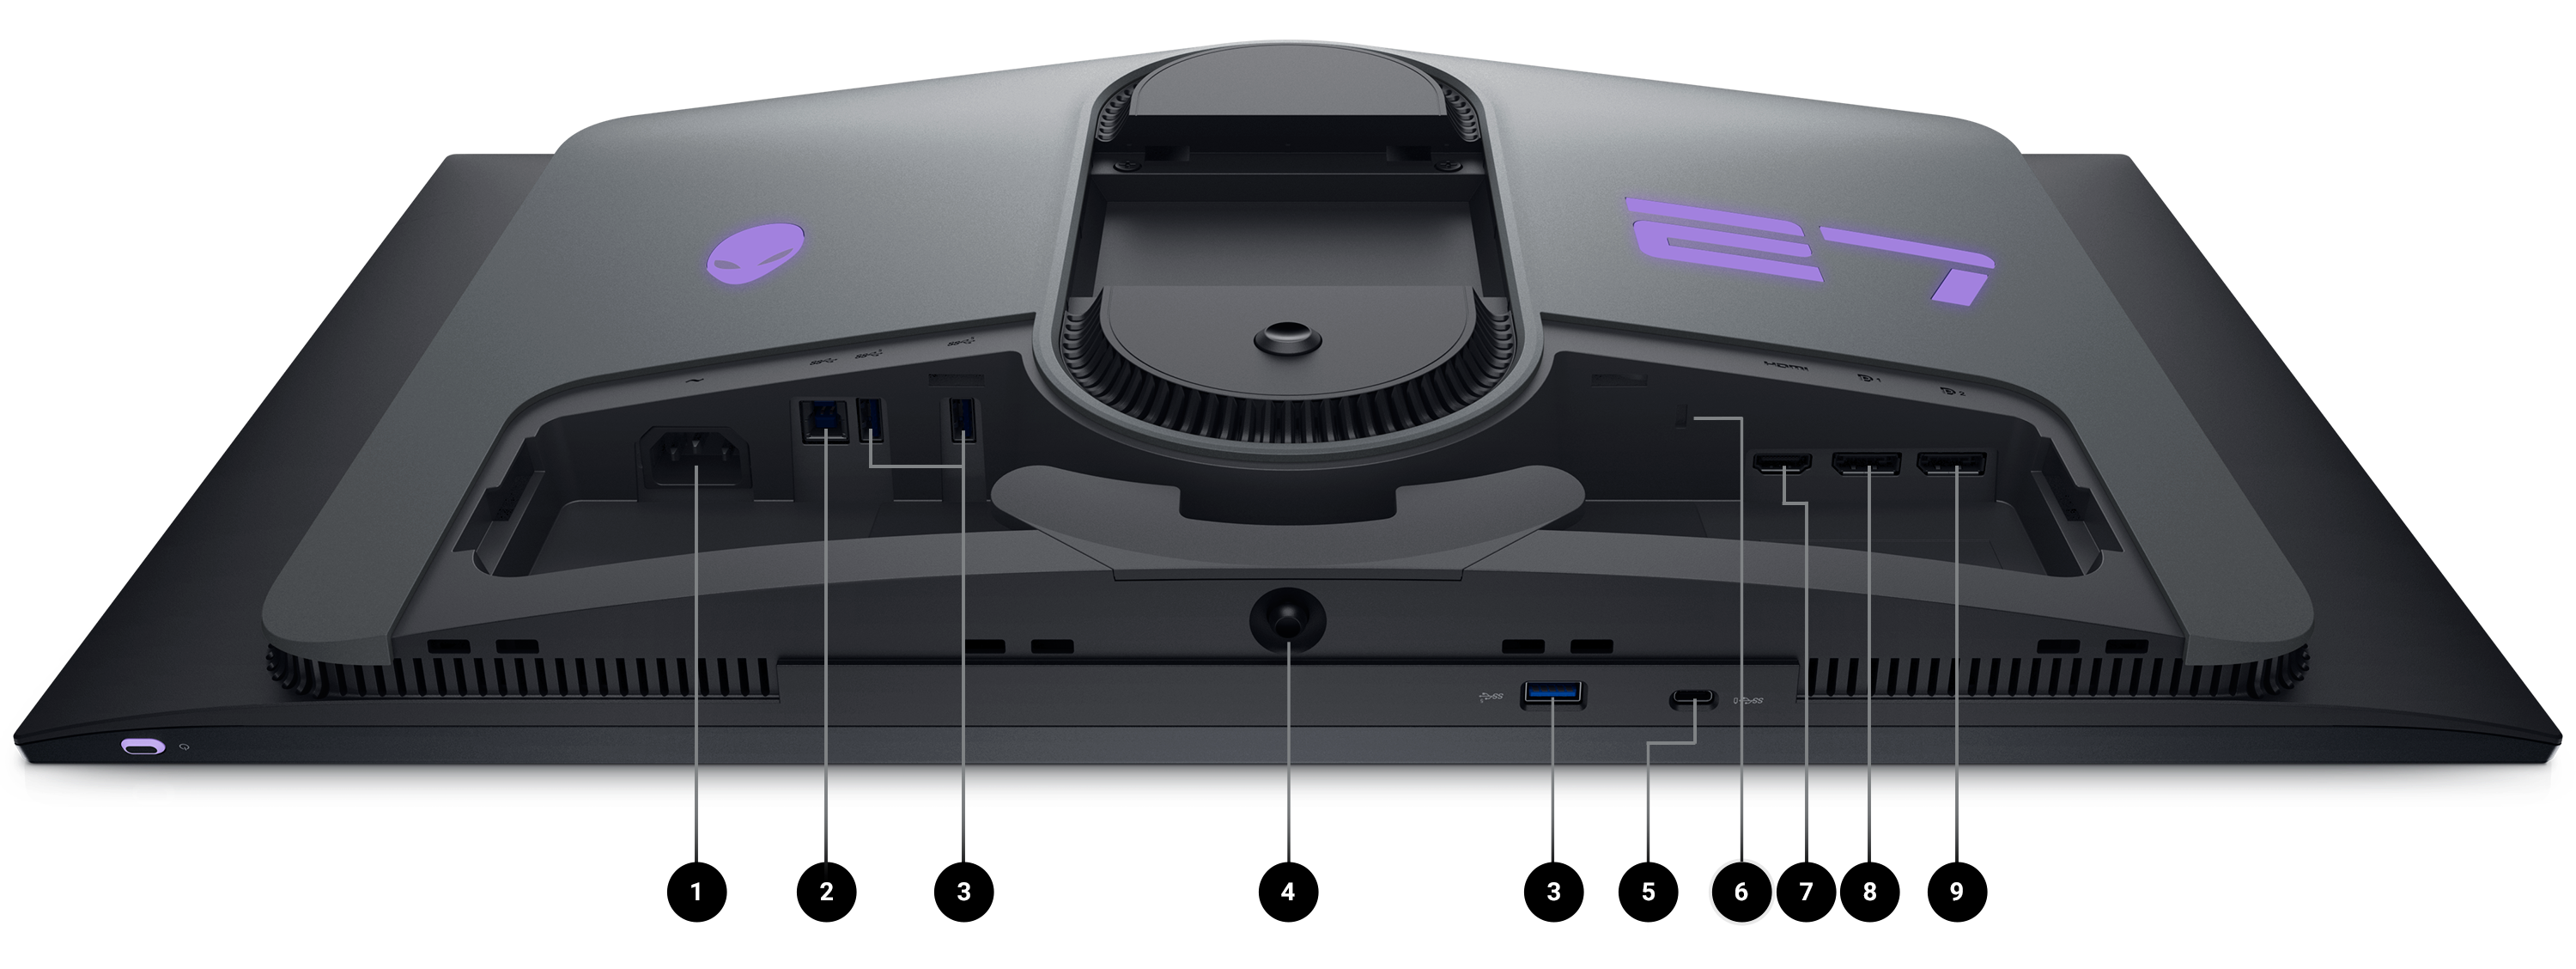 Moniteur de jeu Dell AW2725DF placé l’écran vers le bas avec des numéros de 1 à 9 qui indiquent l’emplacement des options de connectivité du produit.